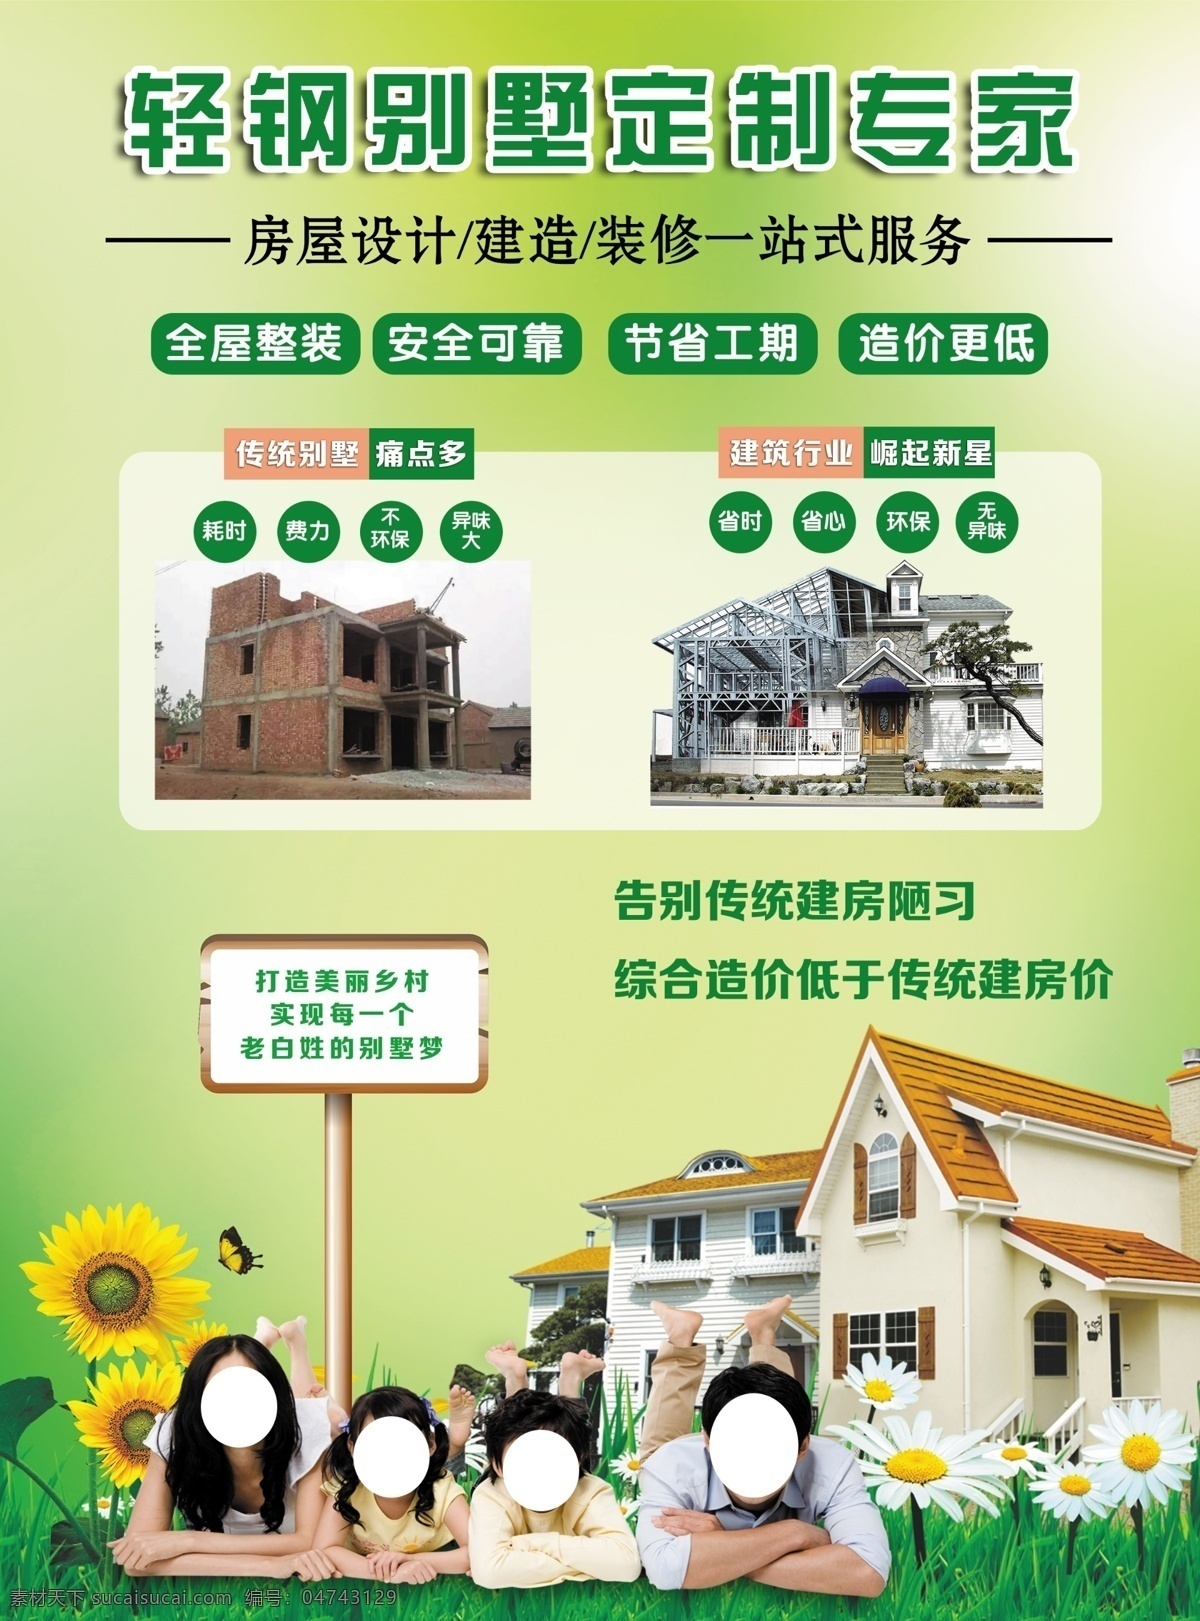 轻钢别墅 农村盖房 节能 设计房屋 环保 绿色背景 宣传单 dm宣传单